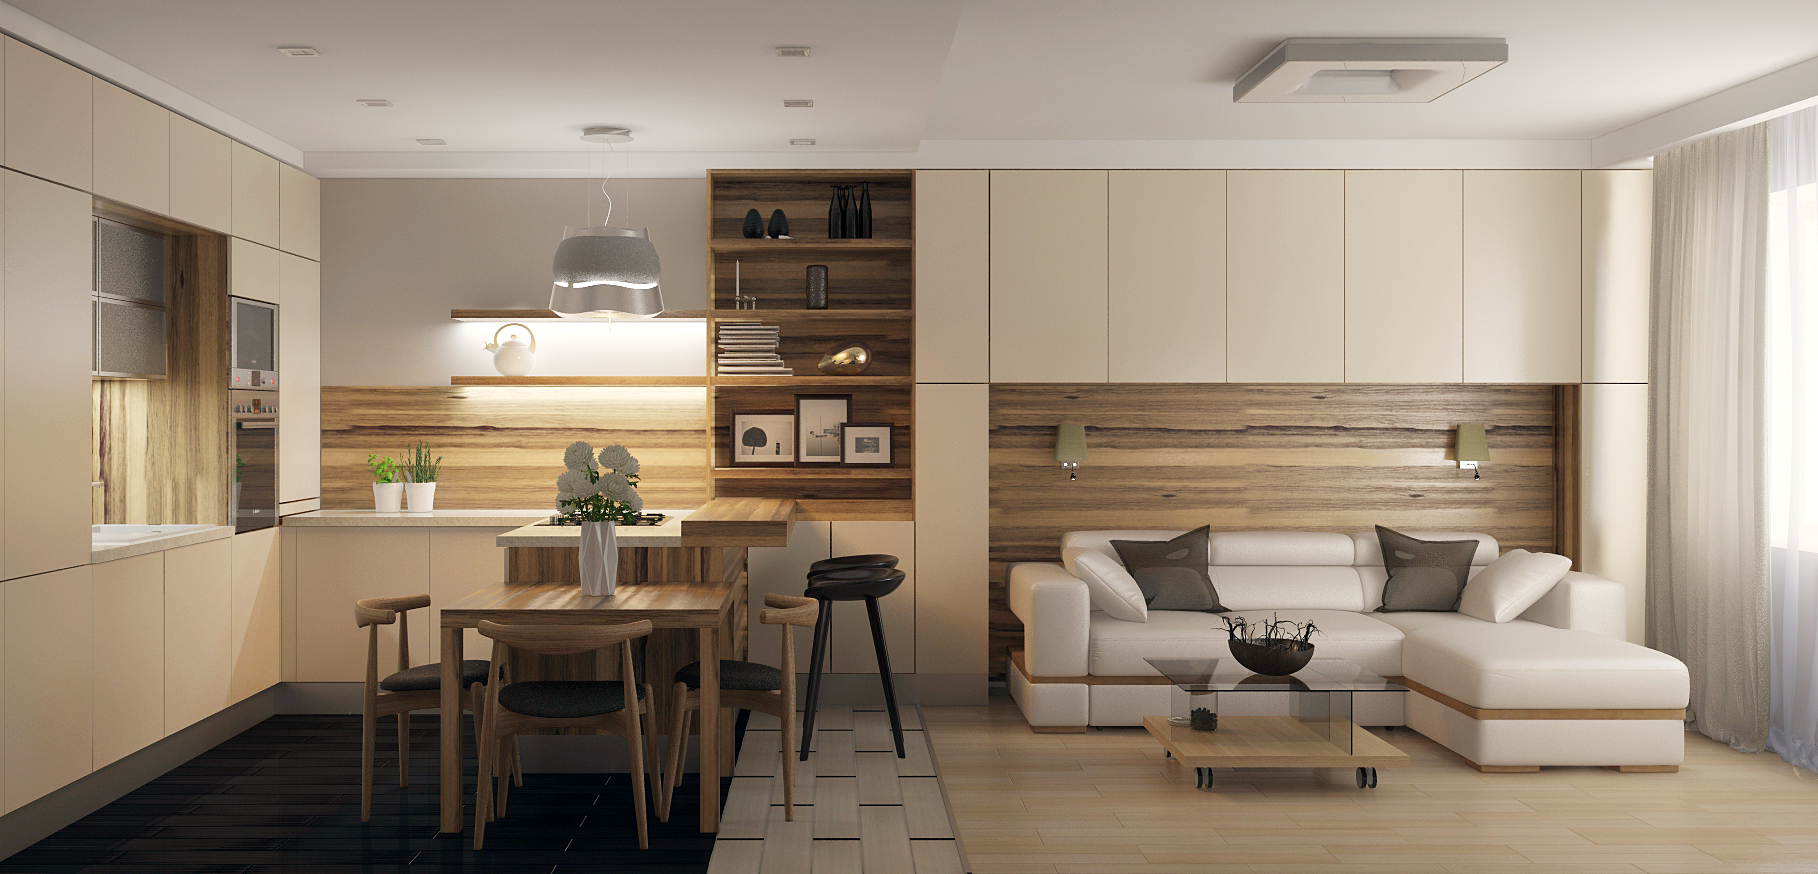 Дизайн интерьера: светлая кухня и гостиная с молдингами на стене